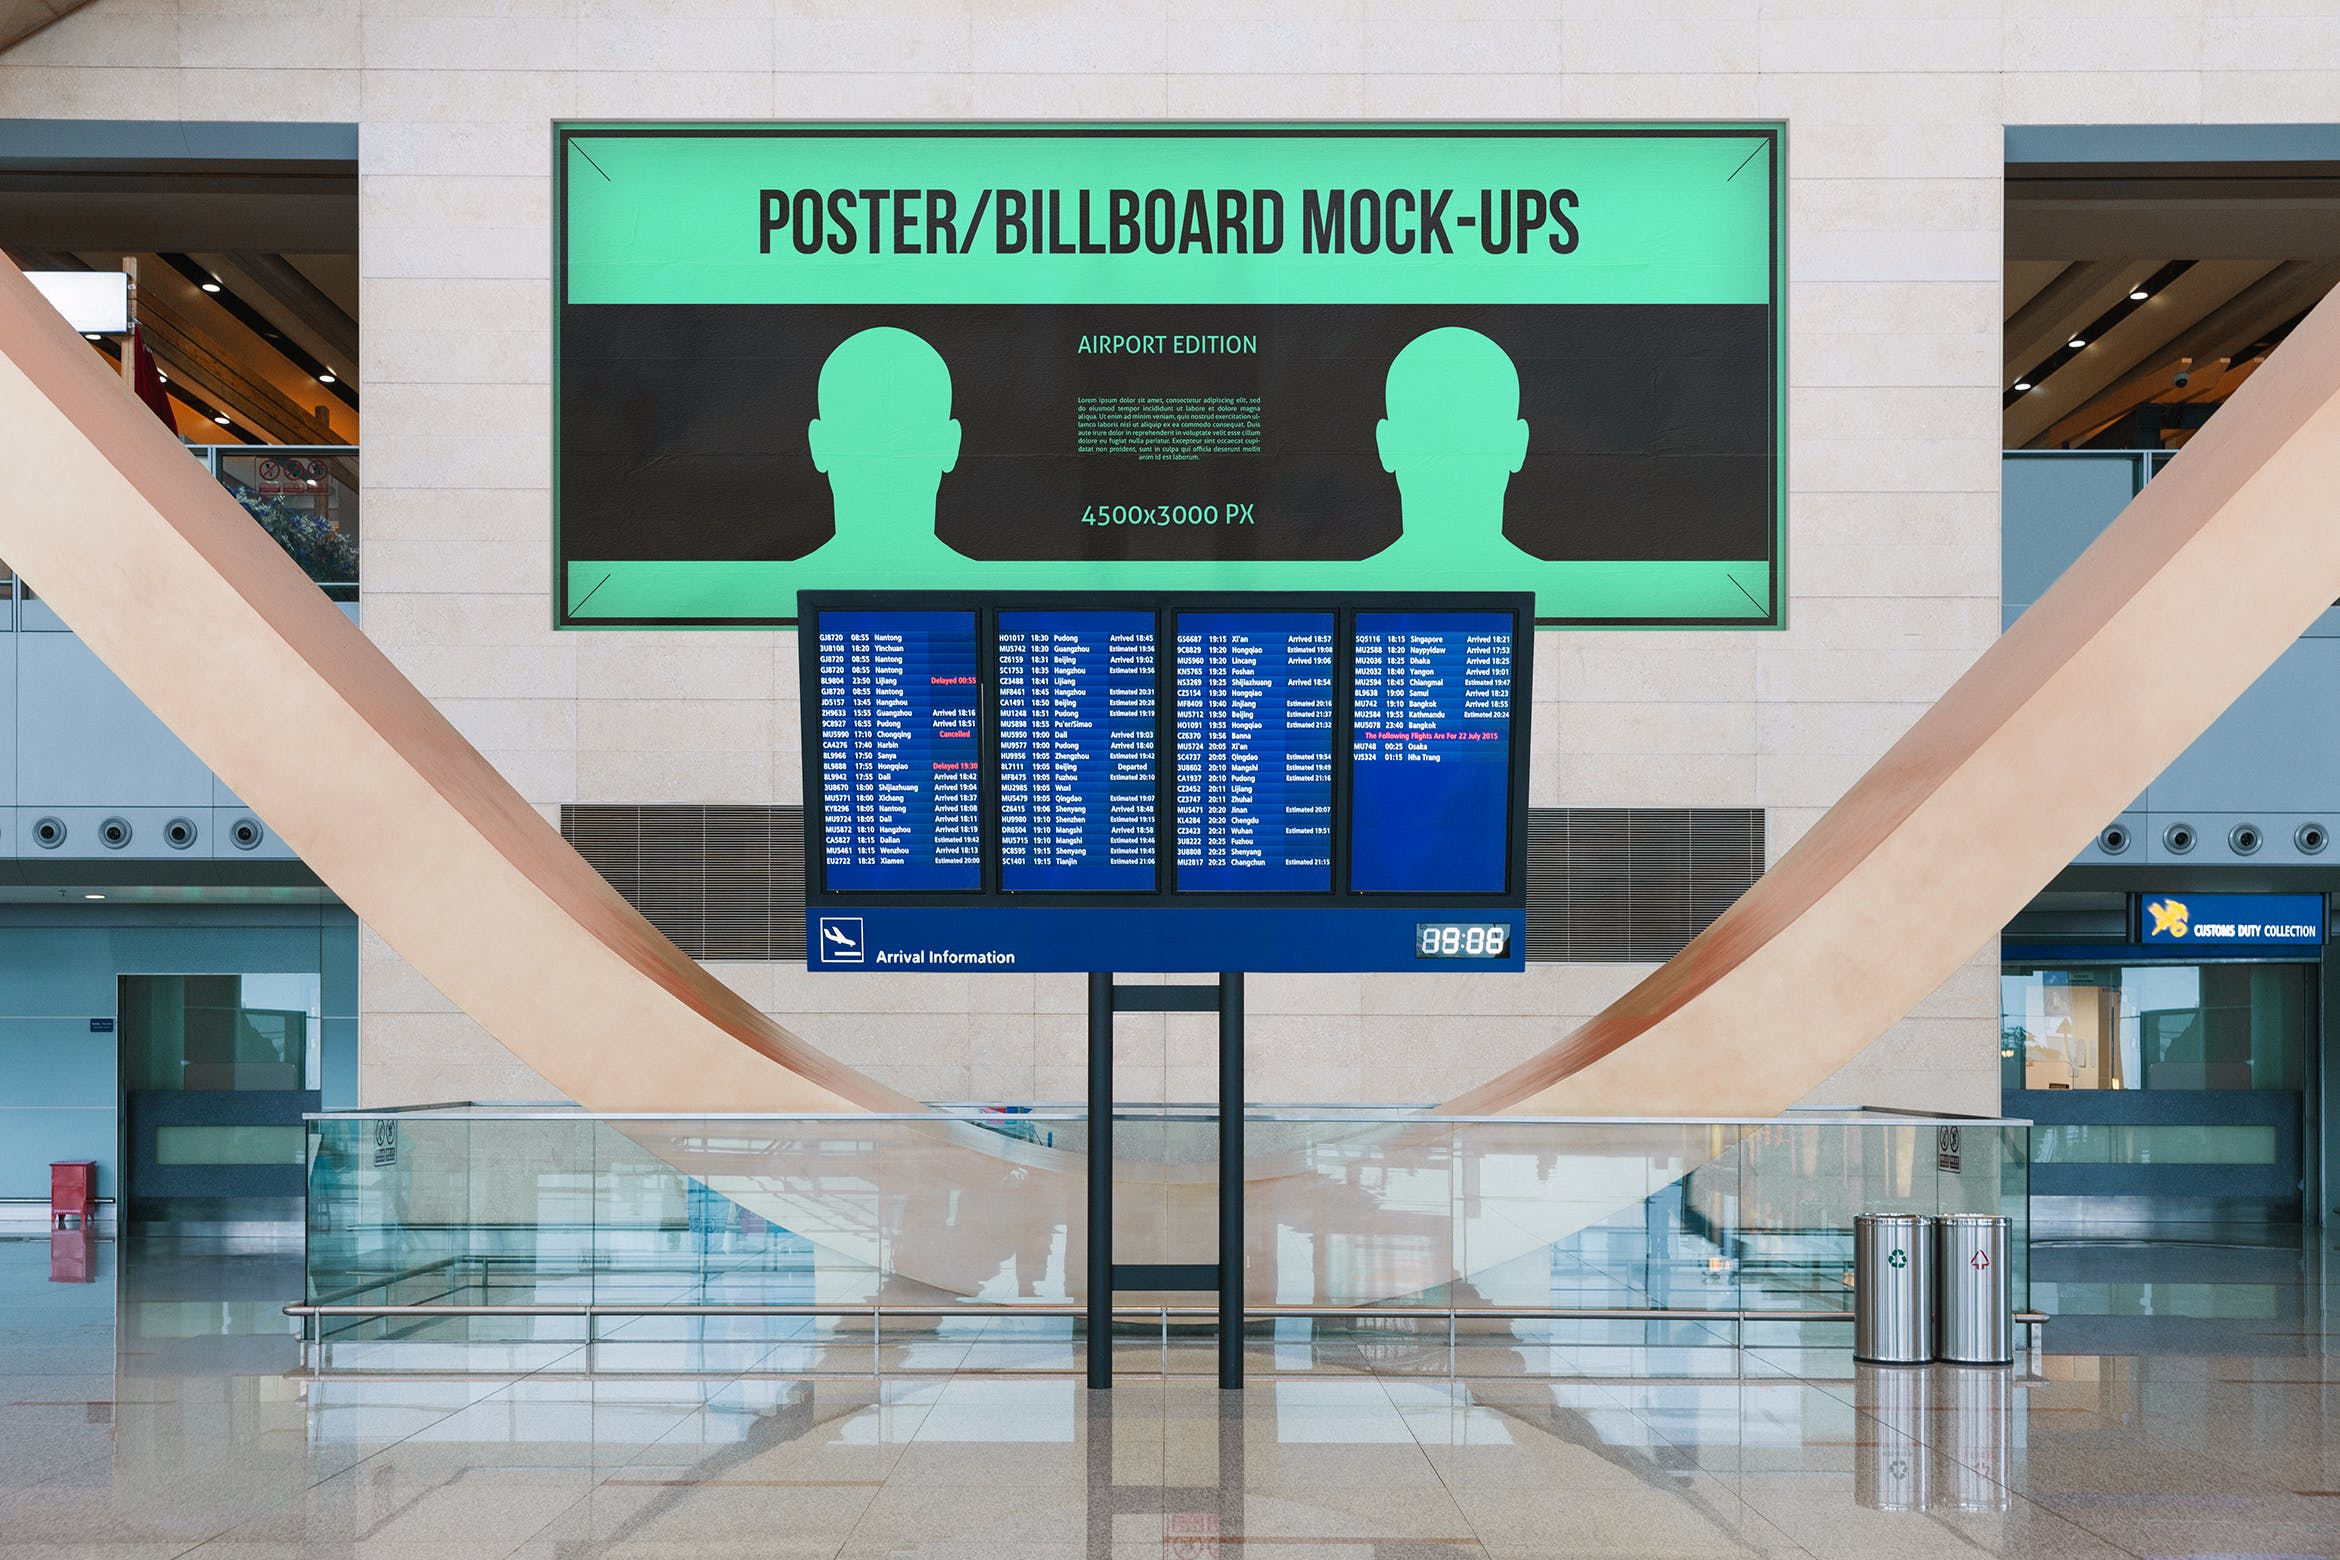 机场航班信息屏幕海报/广告牌样机第一素材精选模板#7 Poster / Billboard Mock-ups – Airport Edition #7插图